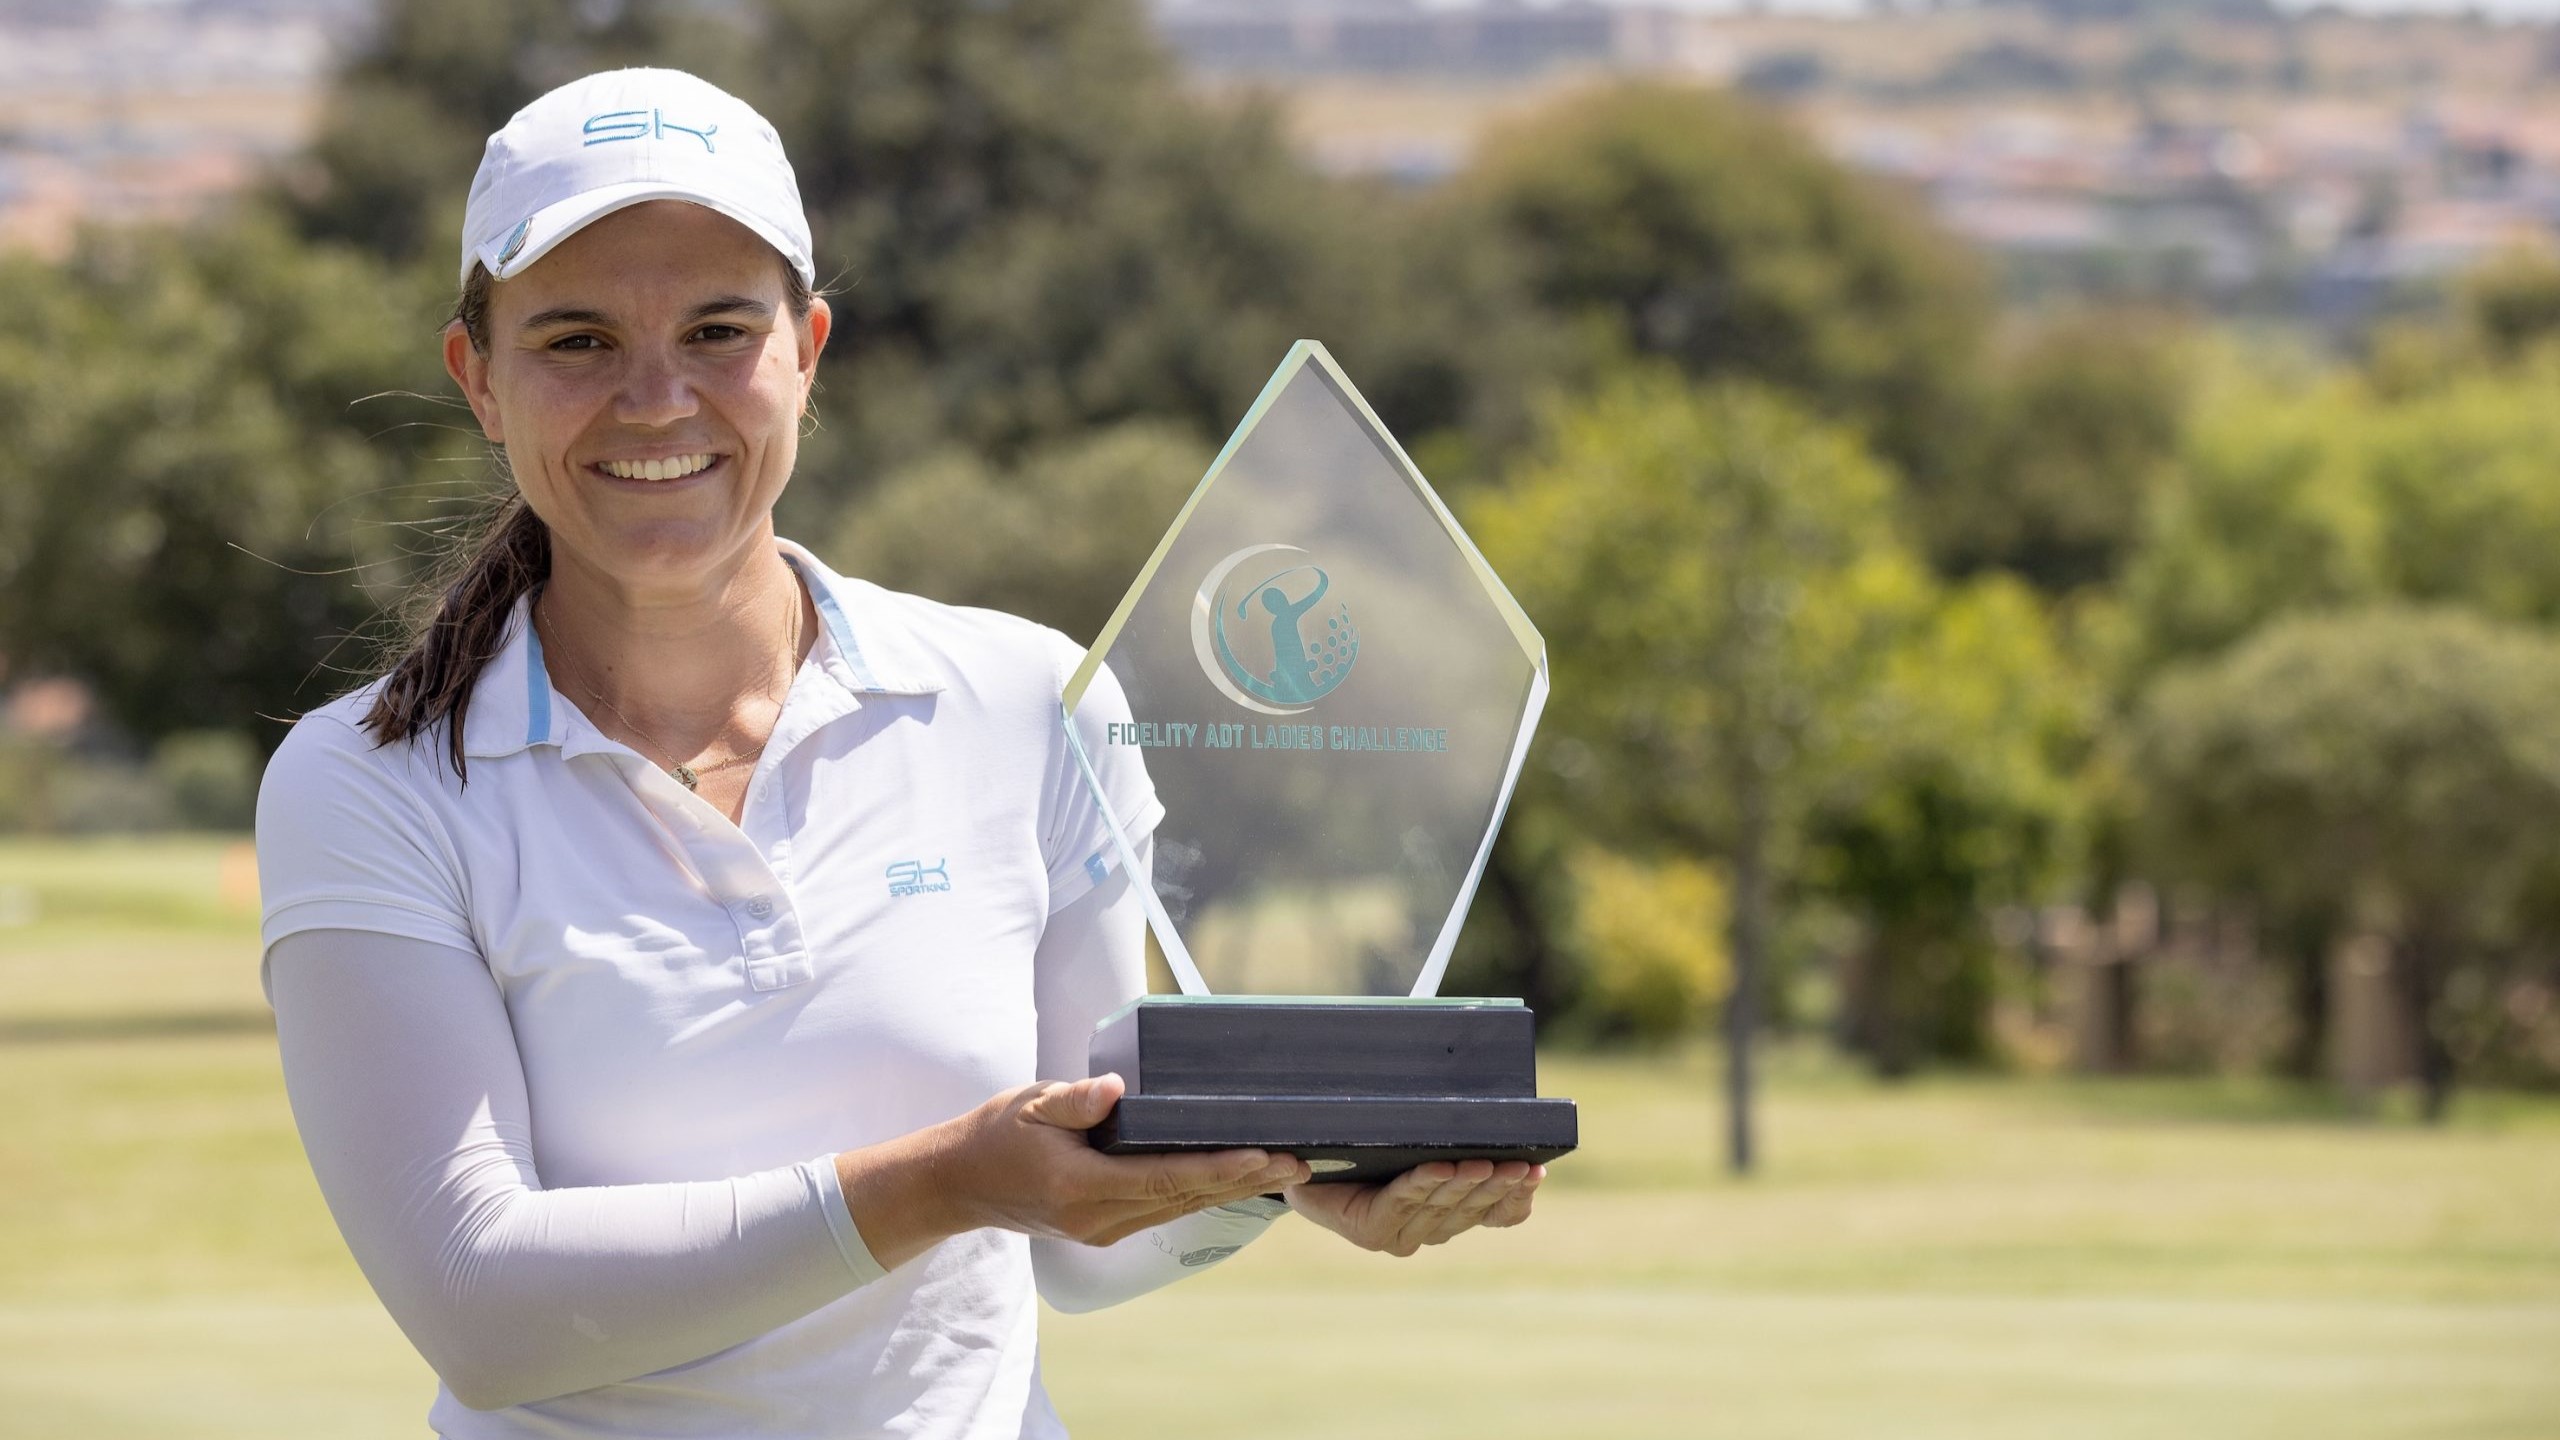 Erster Sieg als Profi-Golferin: Helen Tamy Kreuzer gewinnt auf der Sunshine Ladies Tour in Südafrika. © Sunshine Ladies Tour